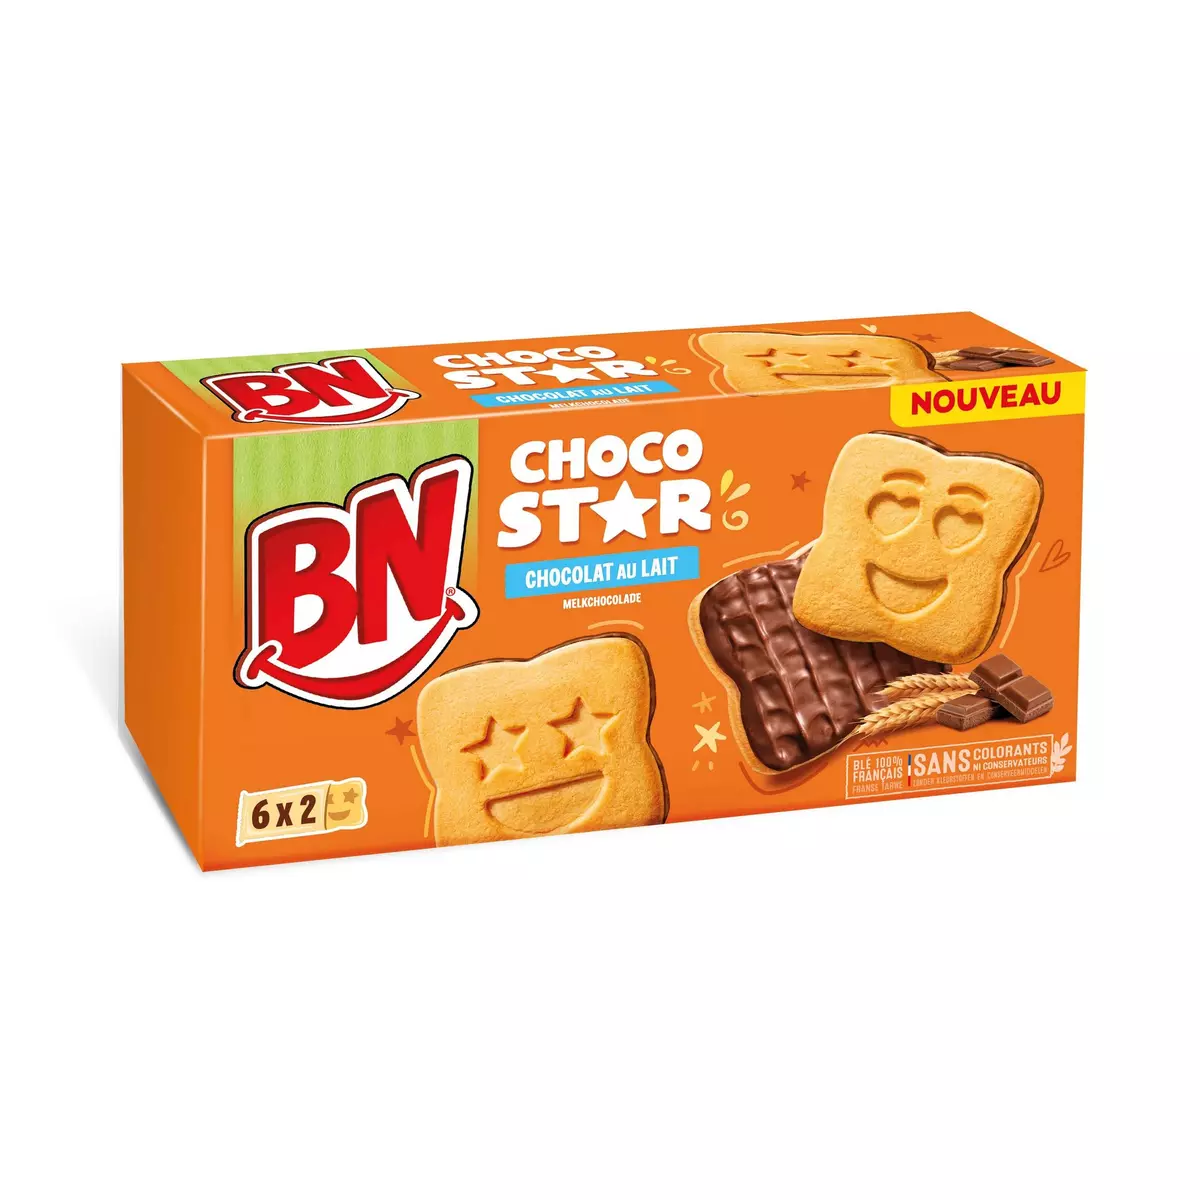 BN Choco star biscuits au chocolat 6x2 biscuits 195g